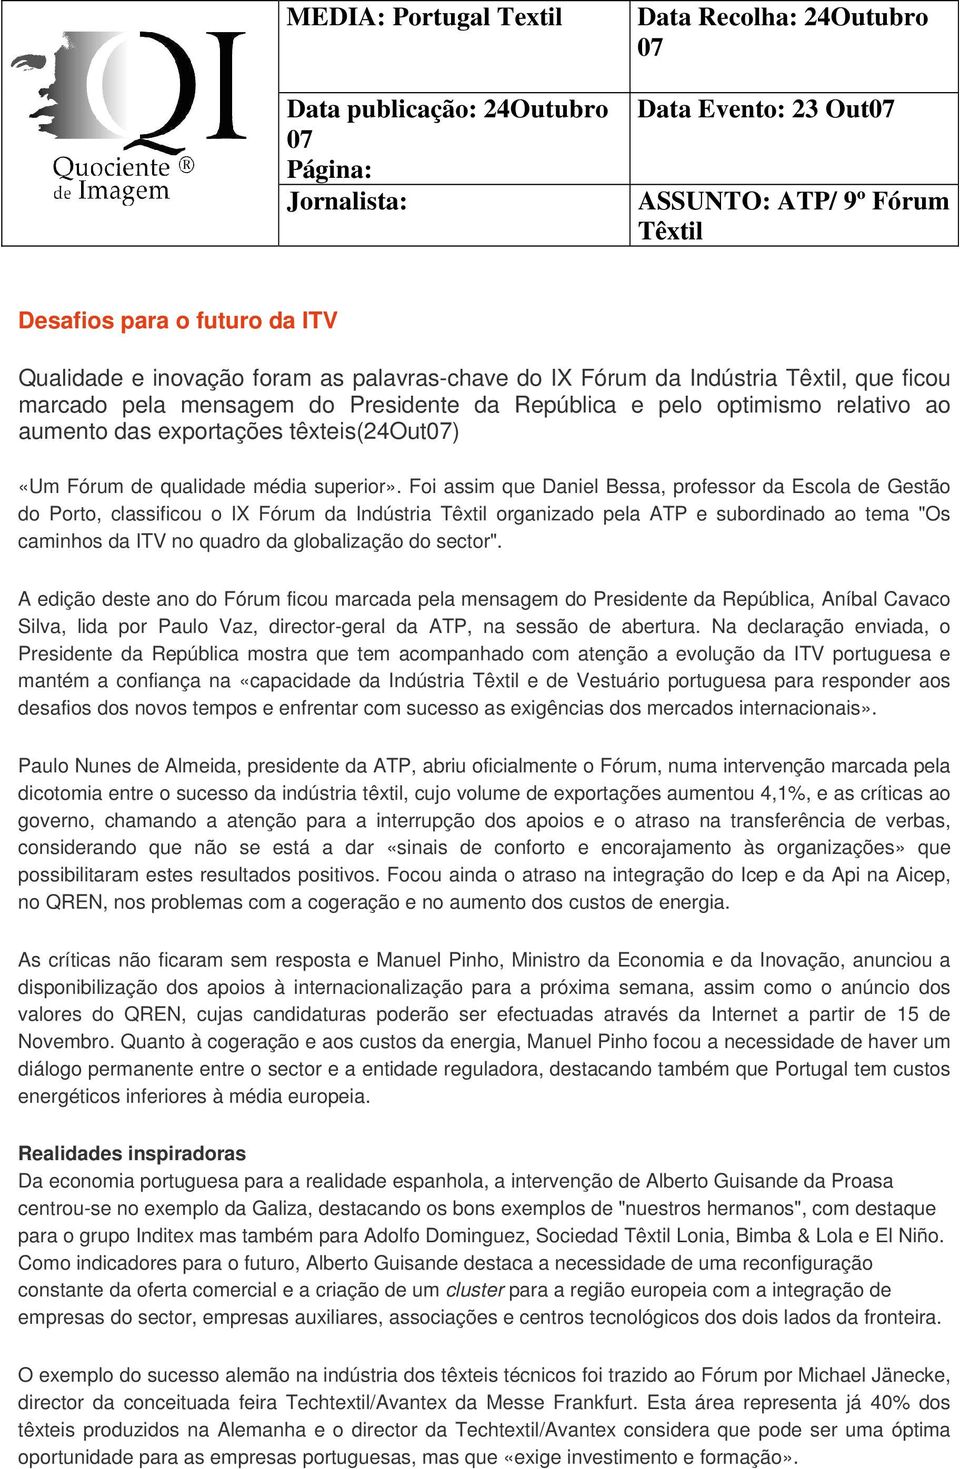 Foi assim que Daniel Bessa, professor da Escola de Gestão do Porto, classificou o IX Fórum da Indústria organizado pela ATP e subordinado ao tema "Os caminhos da ITV no quadro da globalização do